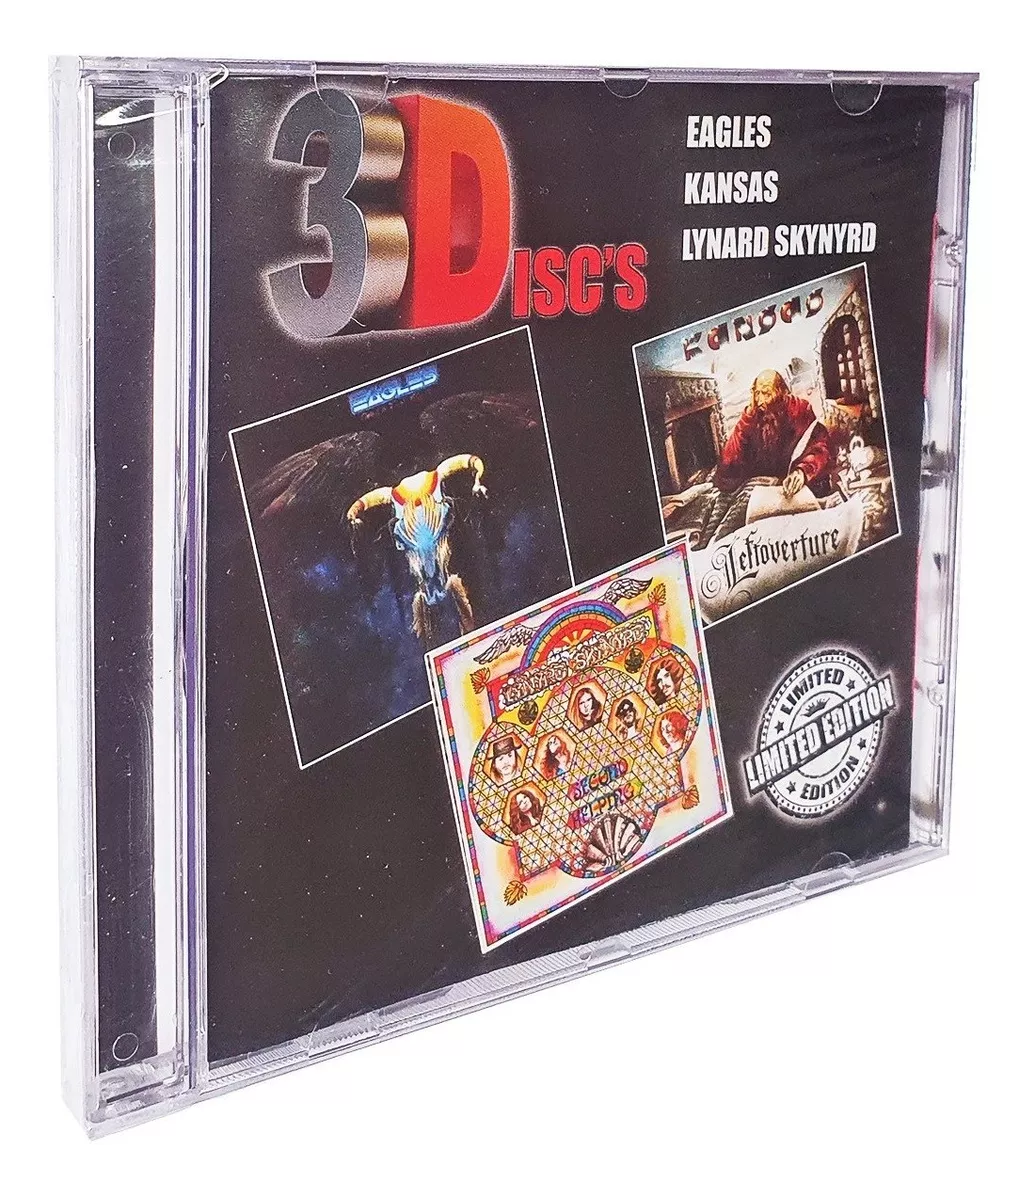 Cd Eagles Kansas Lynard Skynyrd 3disc's Greatest Hits Novo